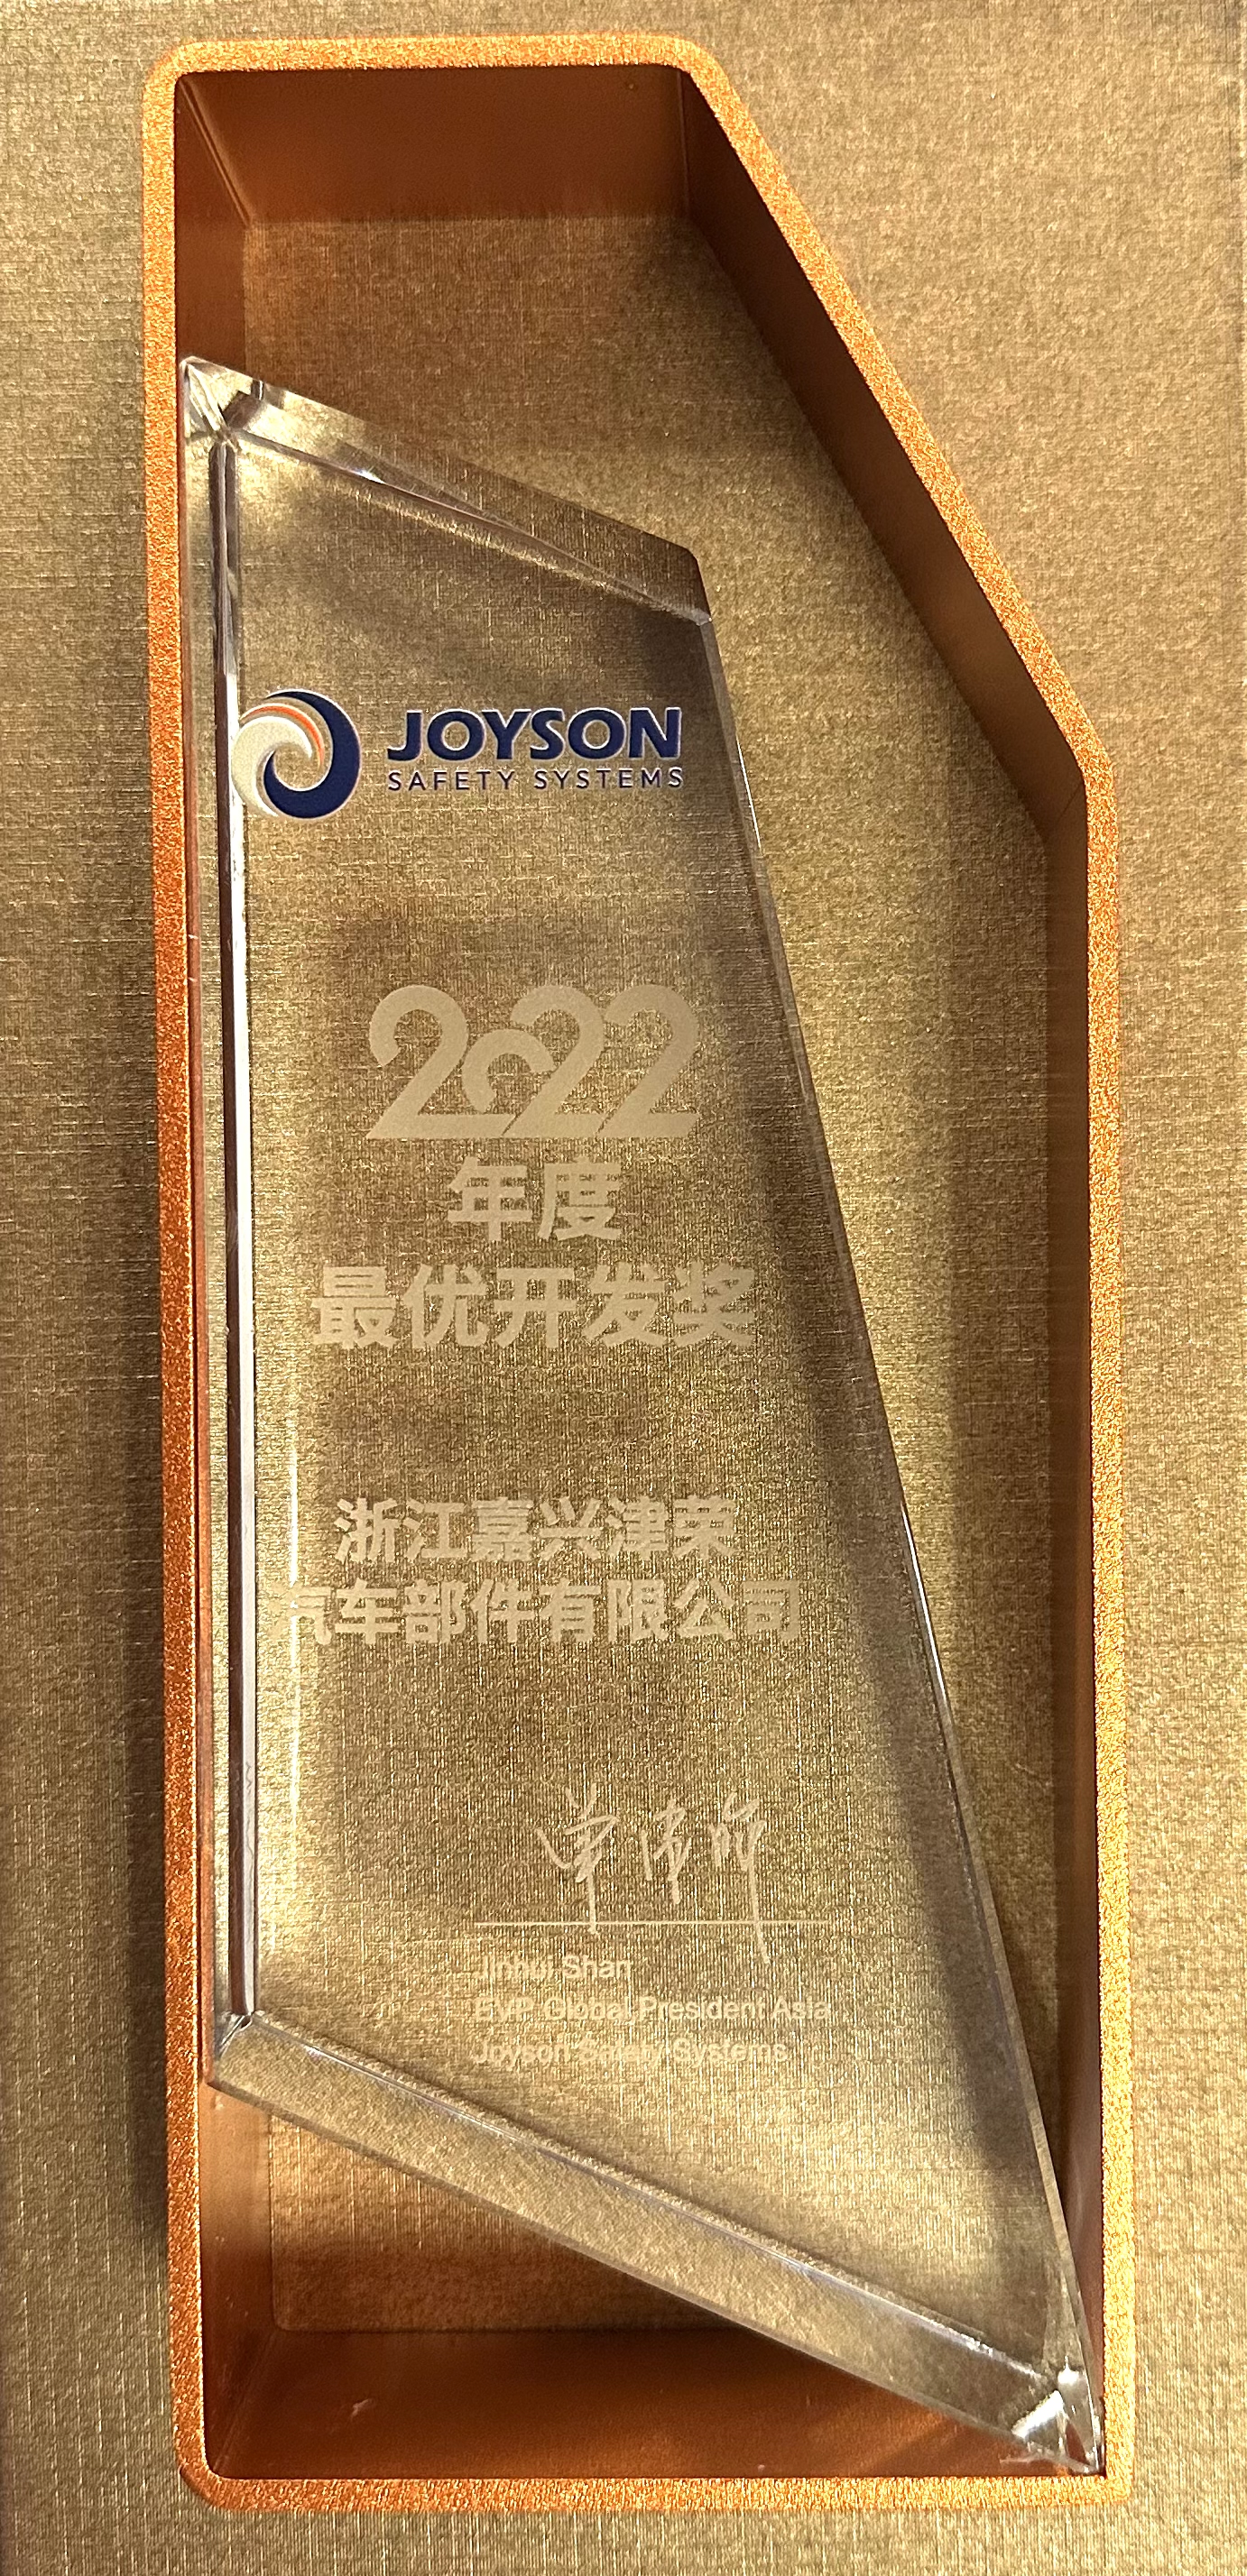 Jiaxing Jinrong - Best Development Award for 2022